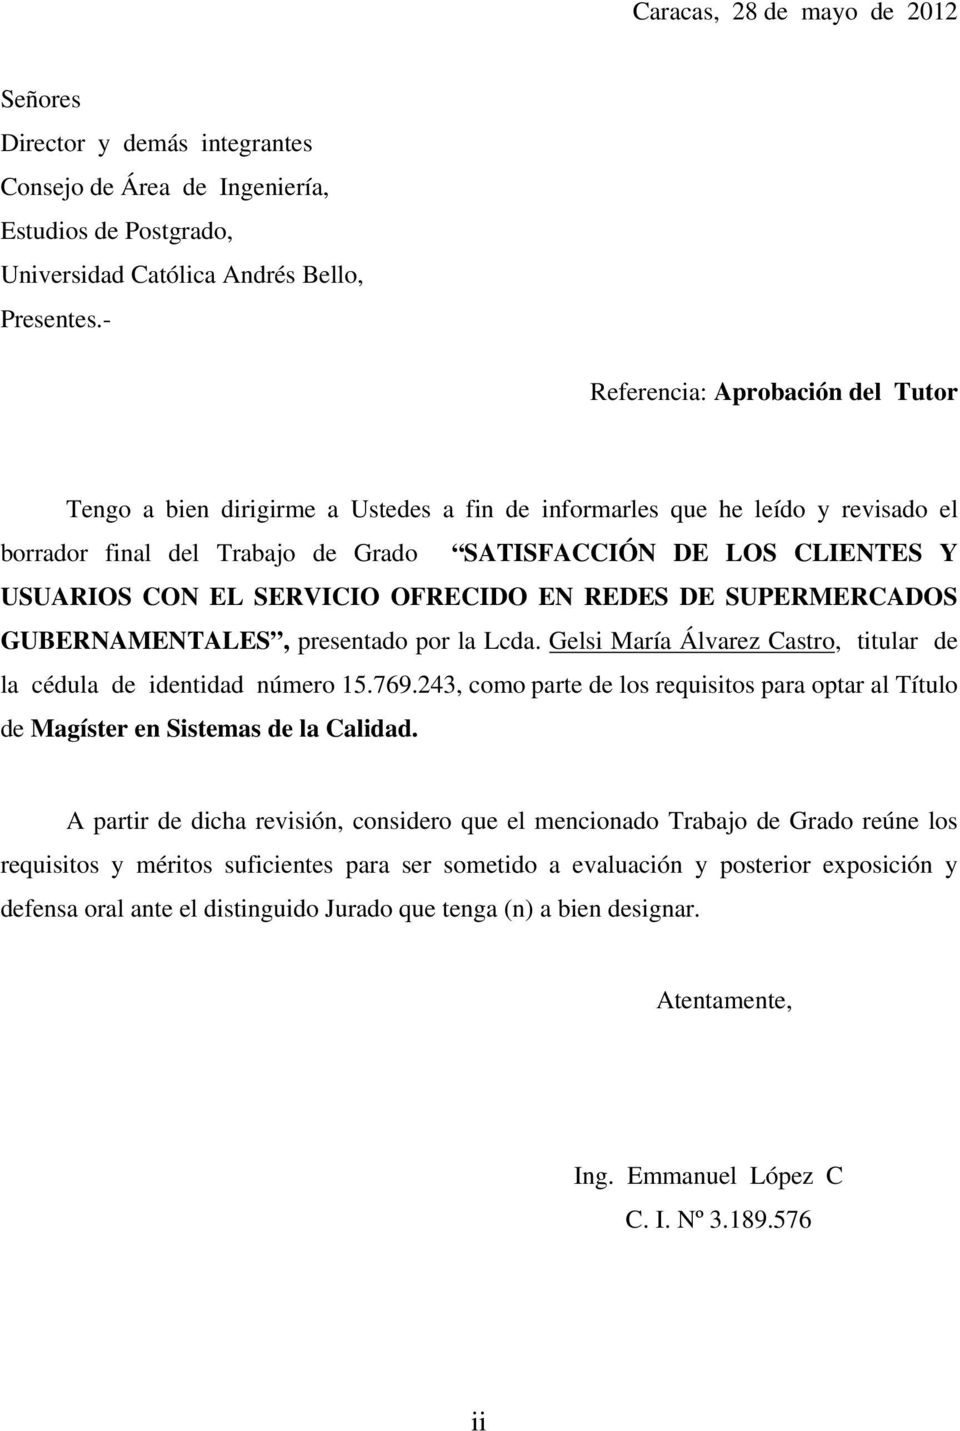 SERVICIO OFRECIDO EN REDES DE SUPERMERCADOS GUBERNAMENTALES, presentado por la Lcda. Gelsi María Álvarez Castro, titular de la cédula de identidad número 15.769.